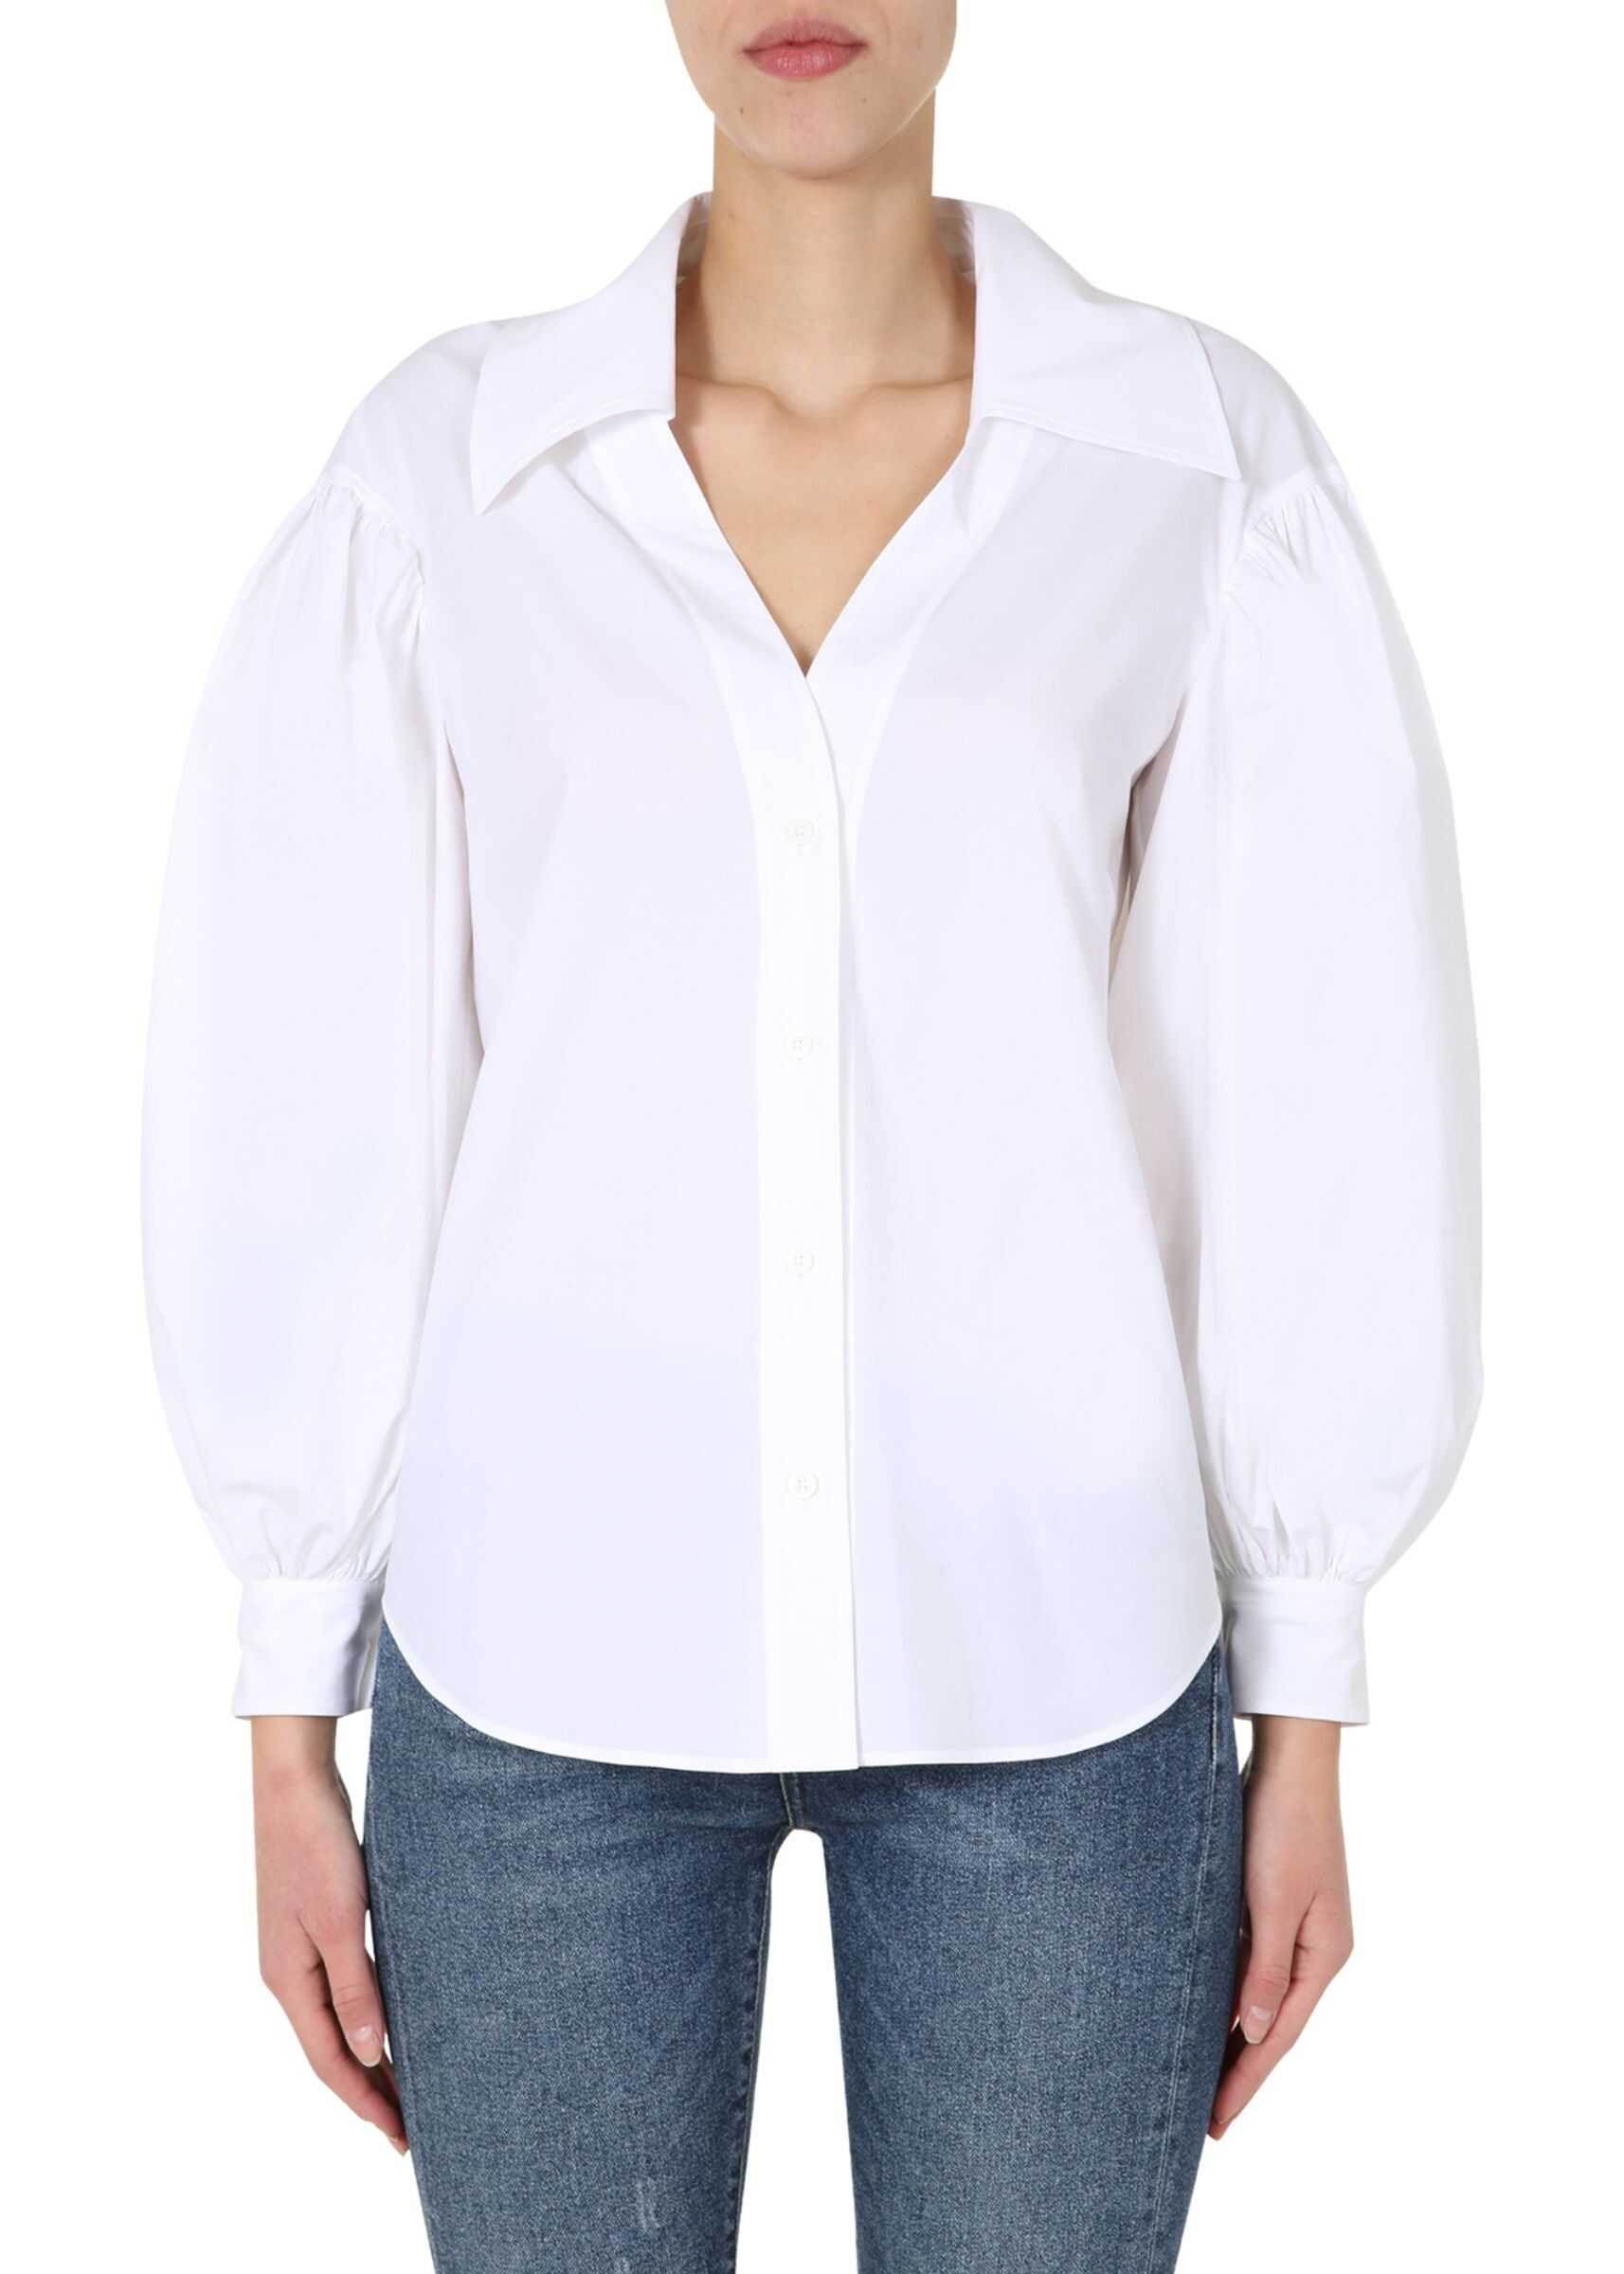 Moschino "Bullchic" Shirt WHITE